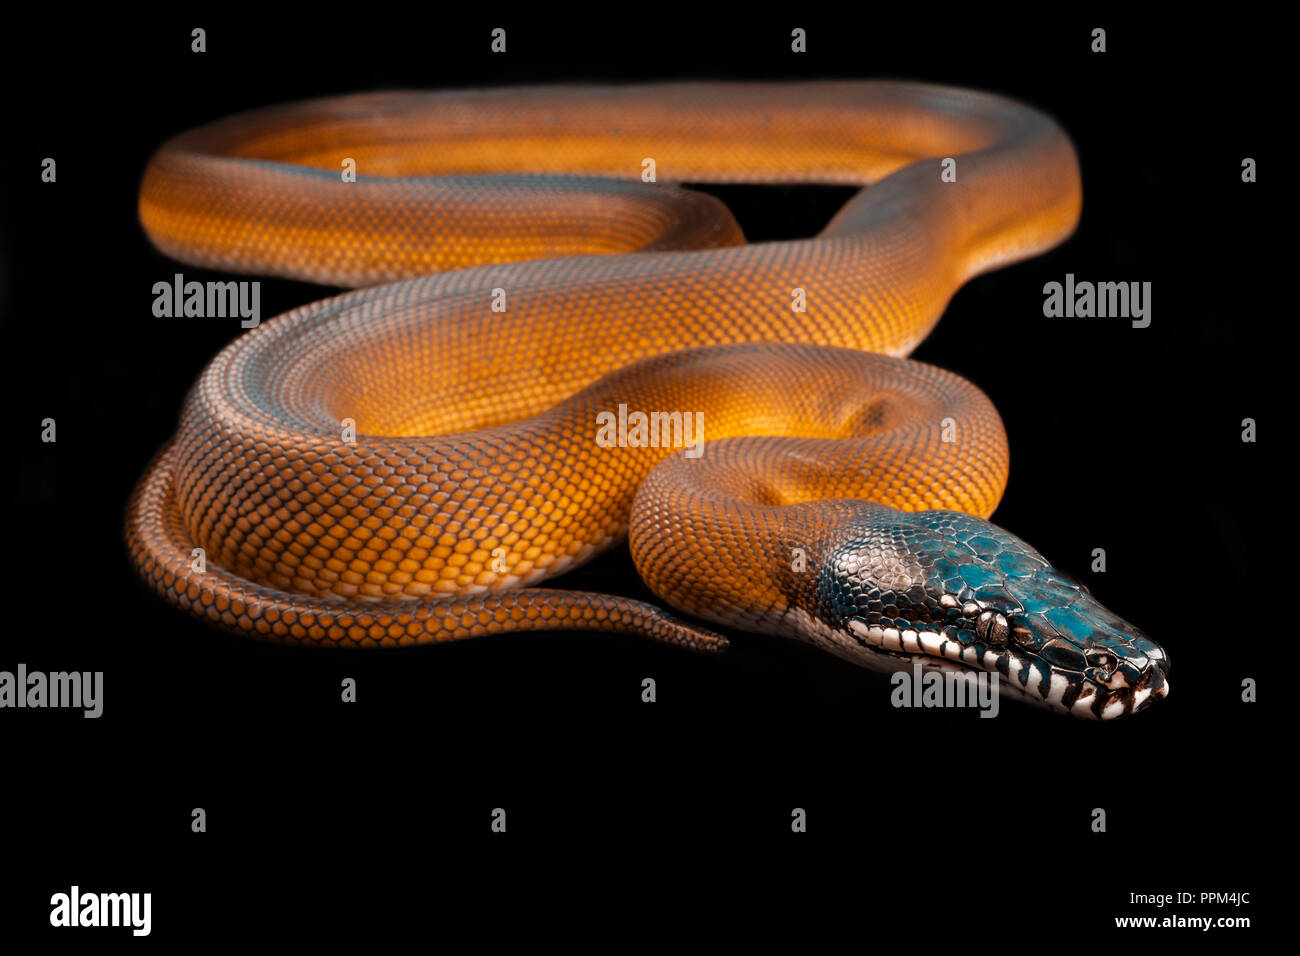 Bothrochilus albertisii / White lipped python Stock Photo